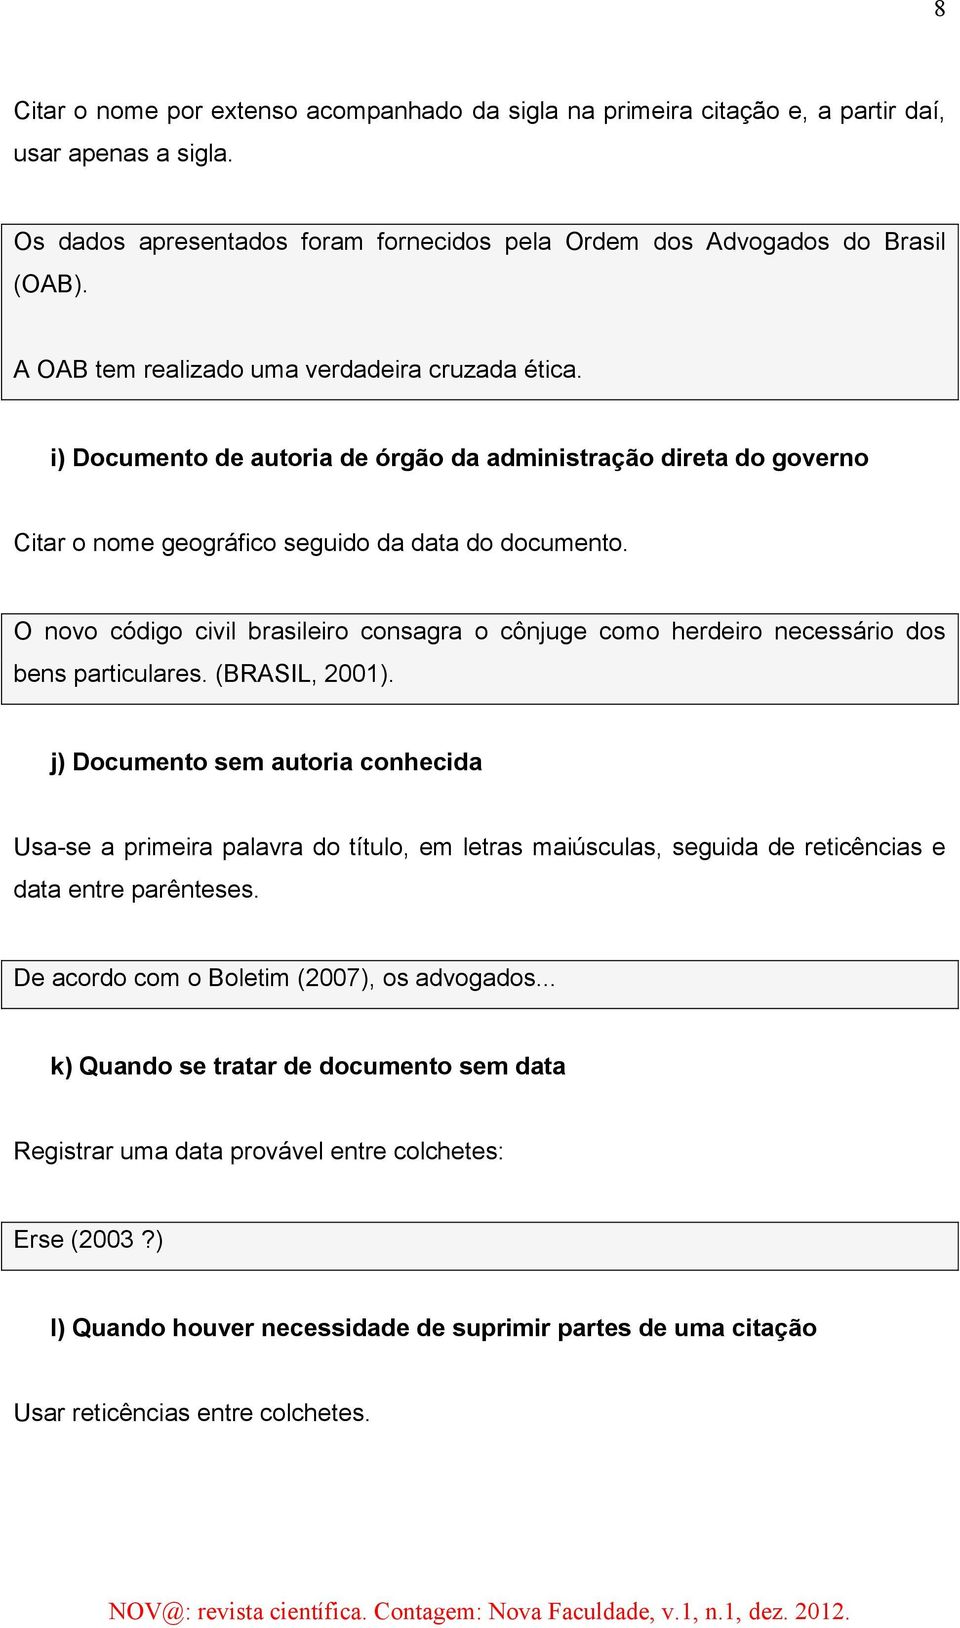 O novo código civil brasileiro consagra o cônjuge como herdeiro necessário dos bens particulares. (BRASIL, 2001).